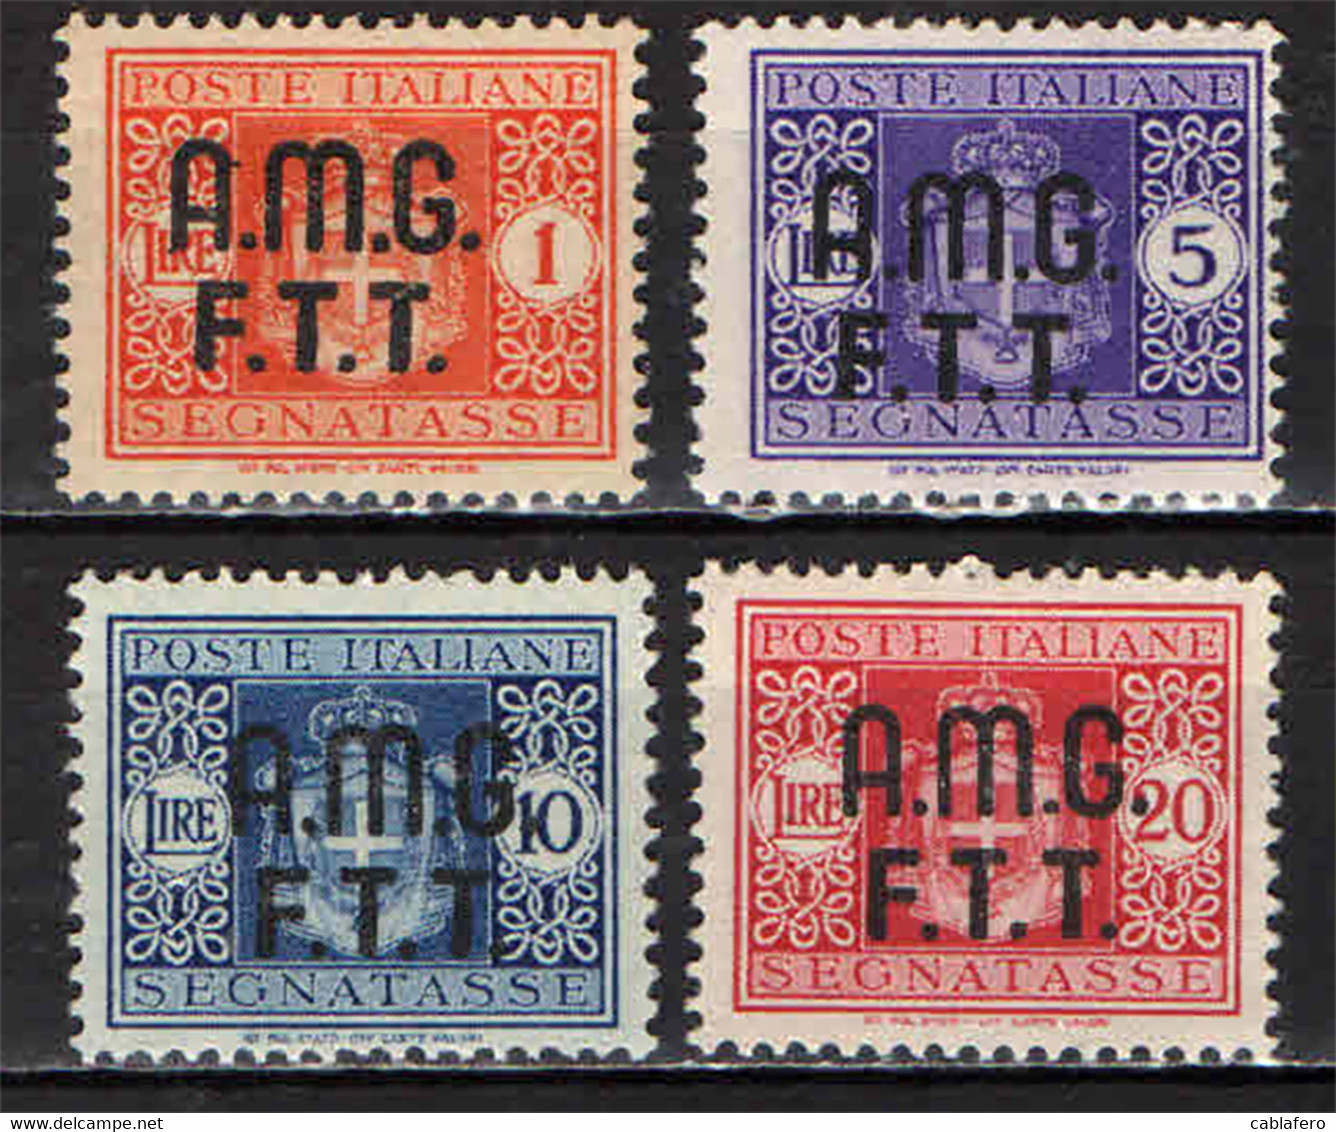 TRIESTE - AMGFTT - 1947 - SEGNATASSE DEL REGNO CON SOVRASTAMPA SU DUE RIGHE - MNH - Revenue Stamps